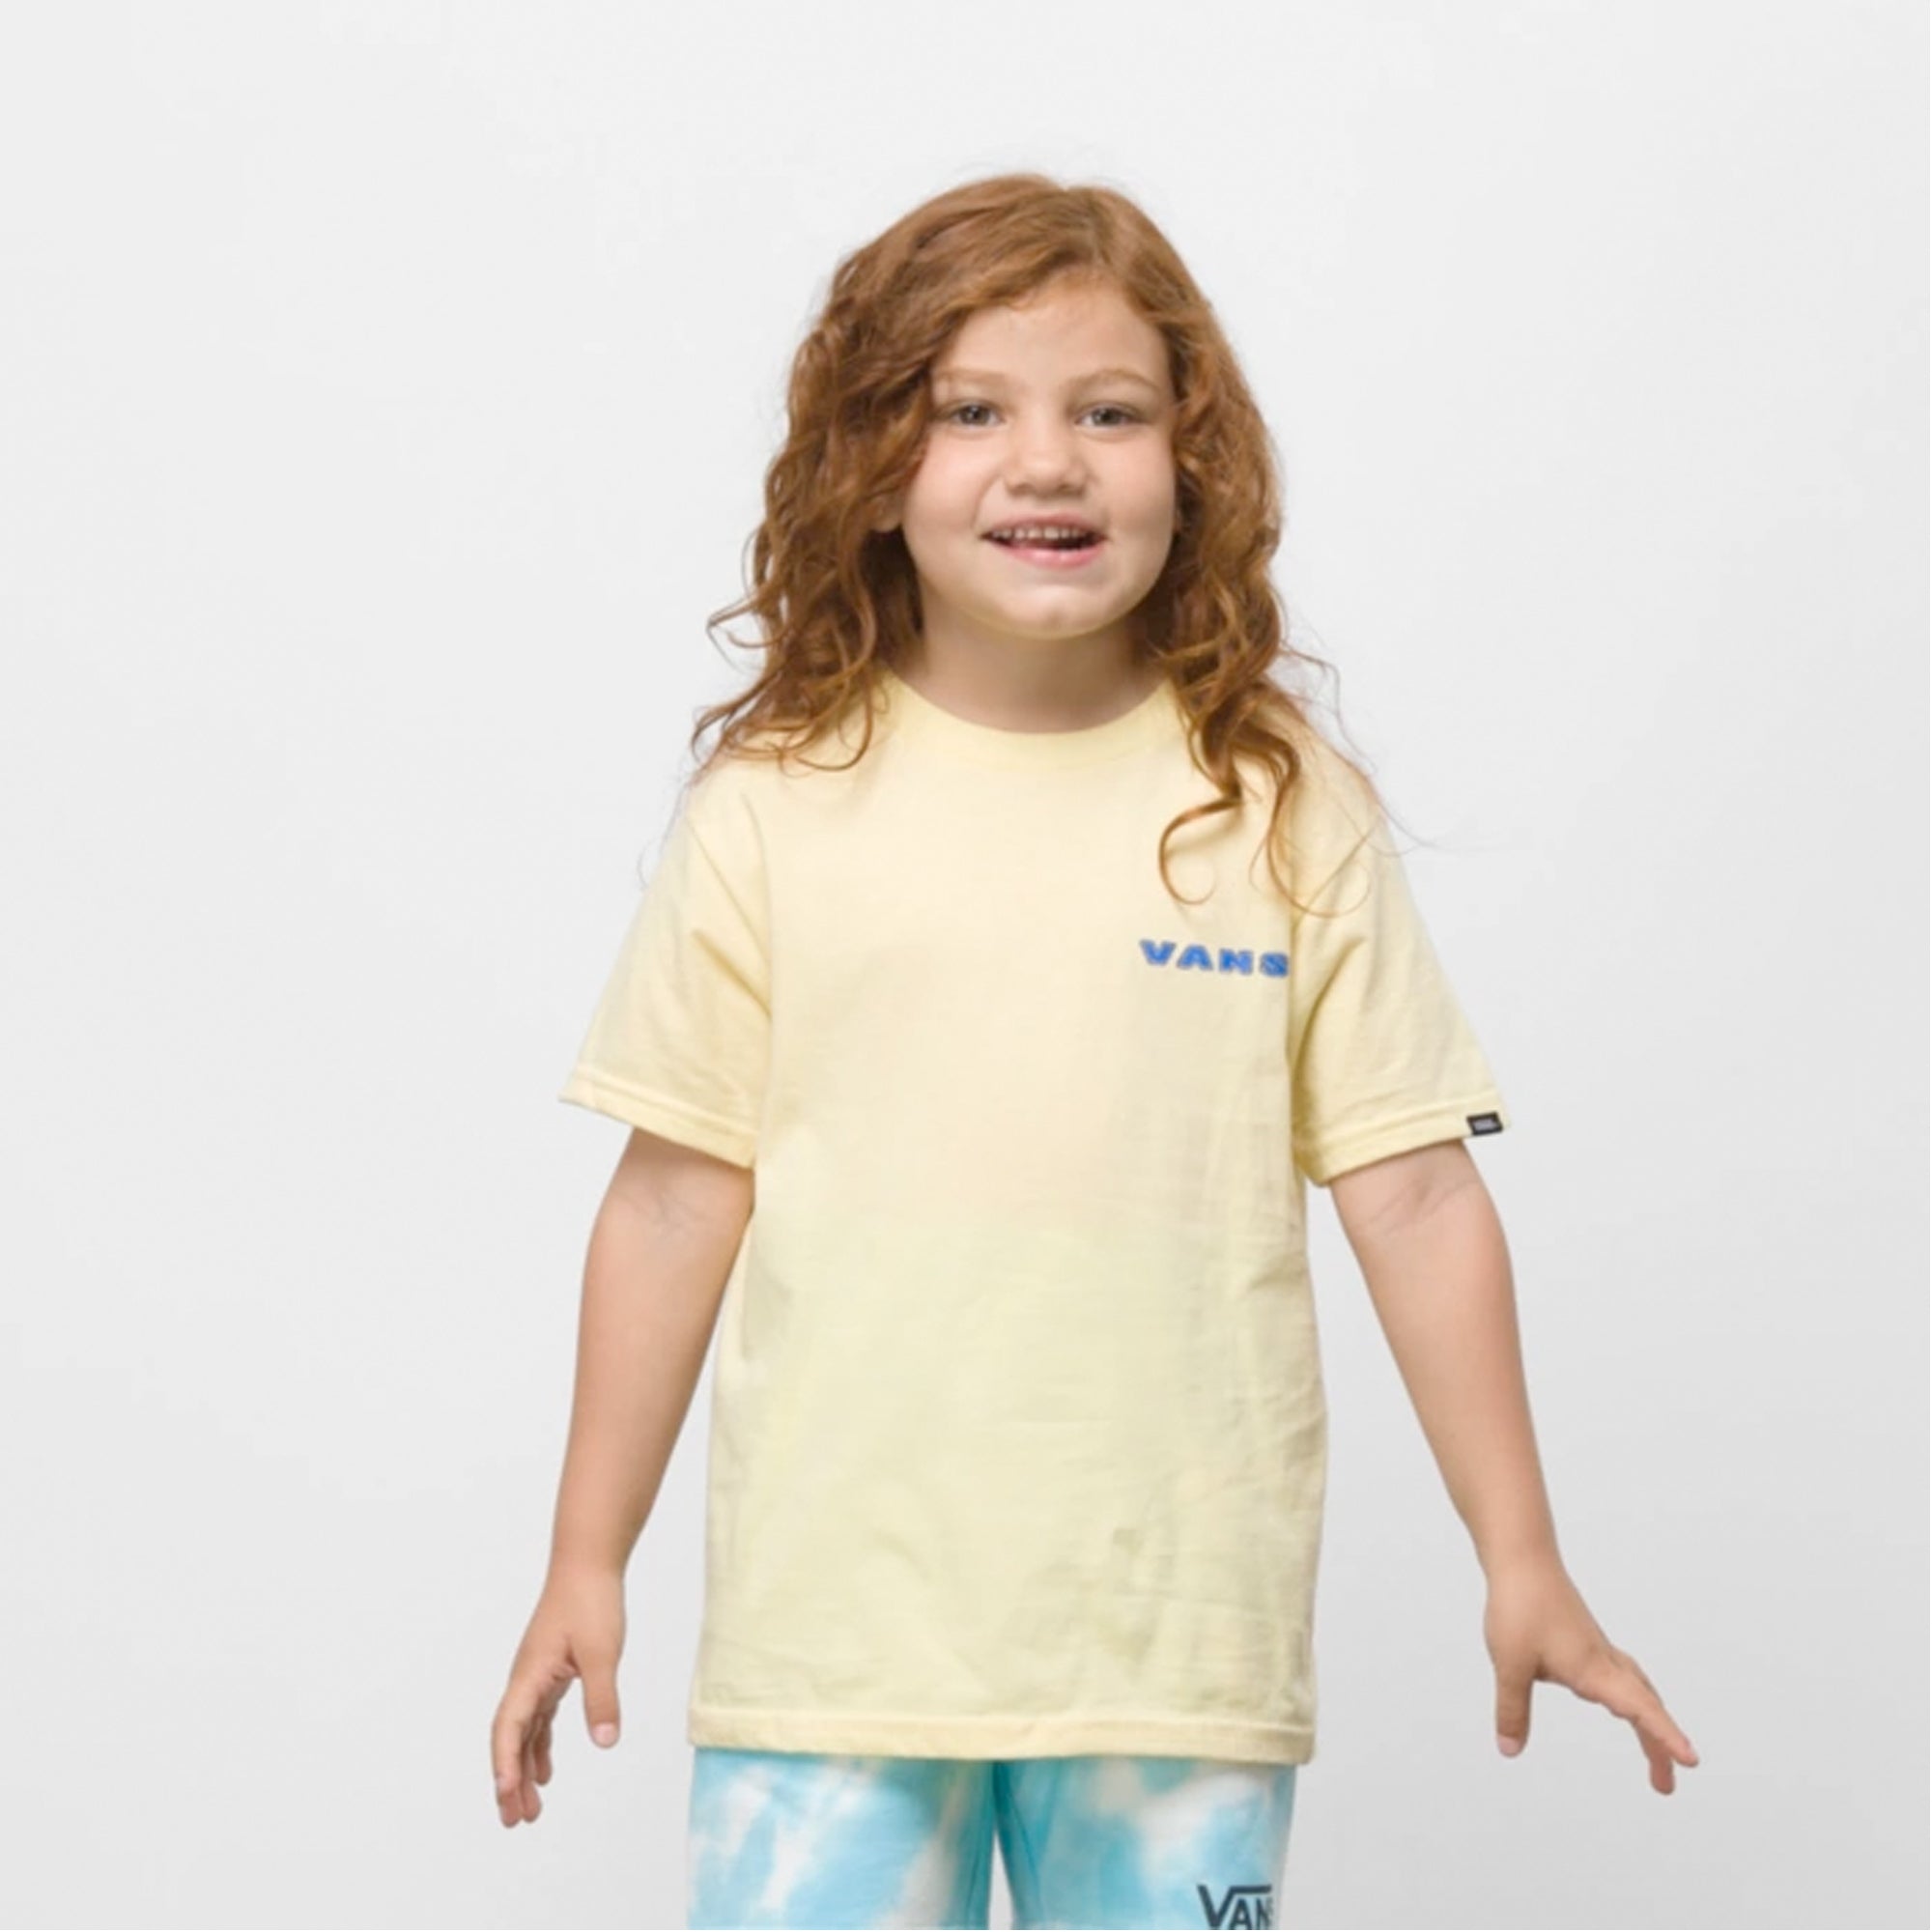 Vans Surf Gecko Toddler Boy's S/S T-Shirt